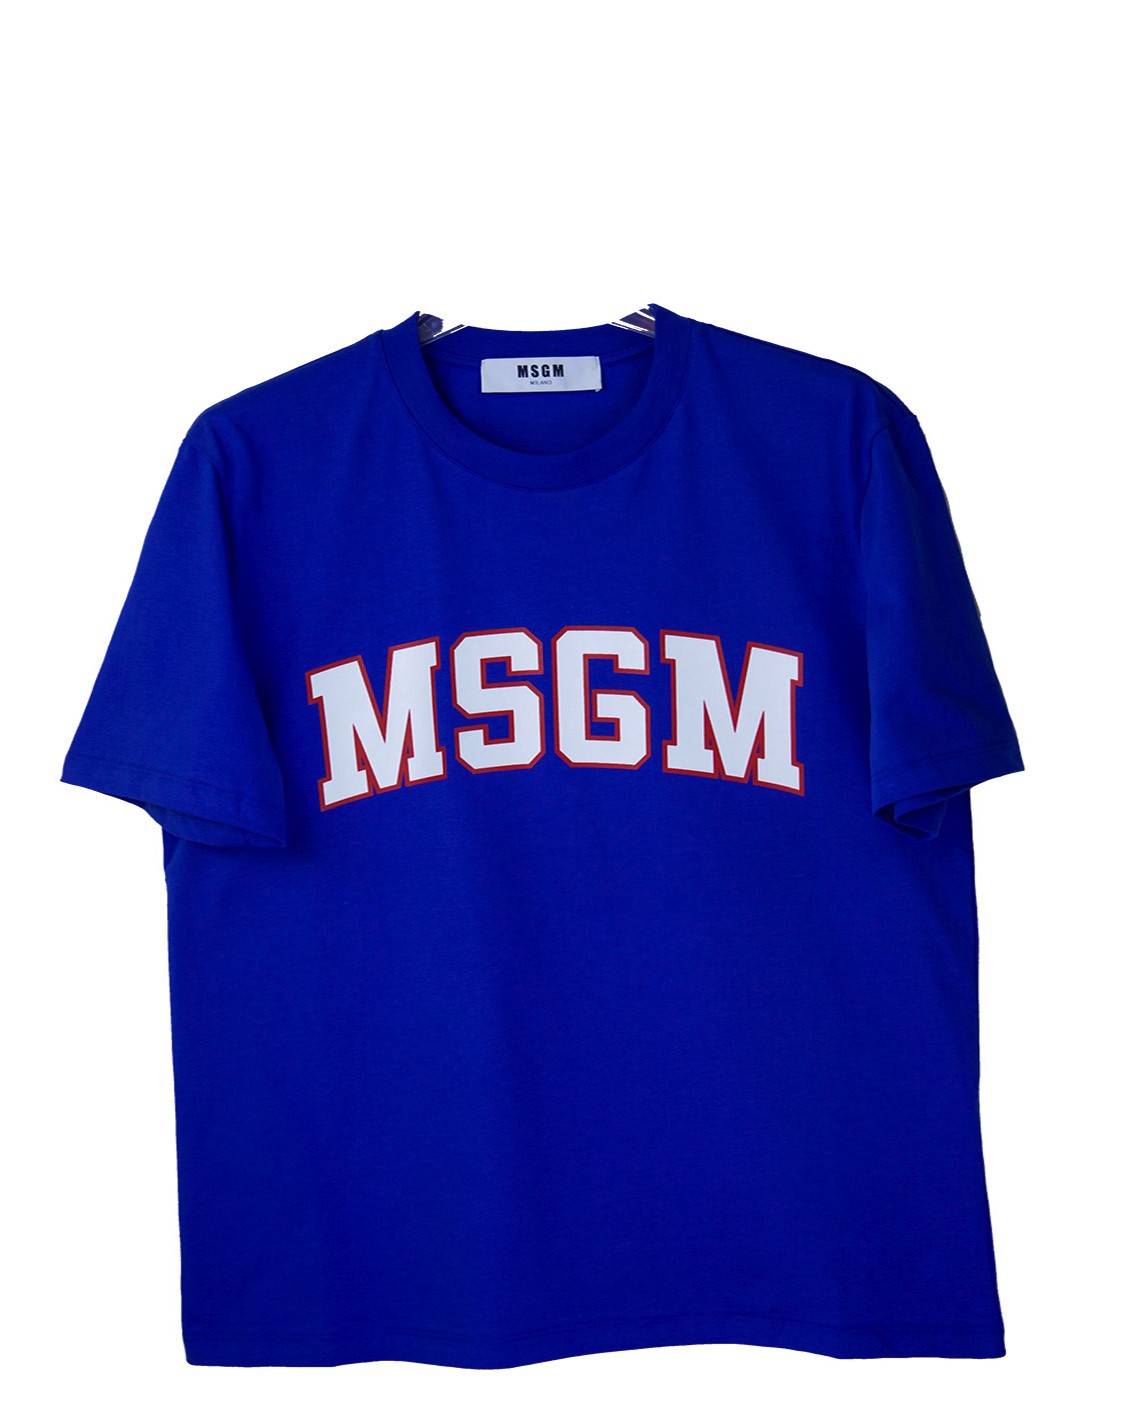 shop MSGM Sales T-shirts: T-shirt MSGM a maniche corte, girocollo, blu elettrico e logo bianco bordato di rosso.

Composizione: 100% cotone. number 864